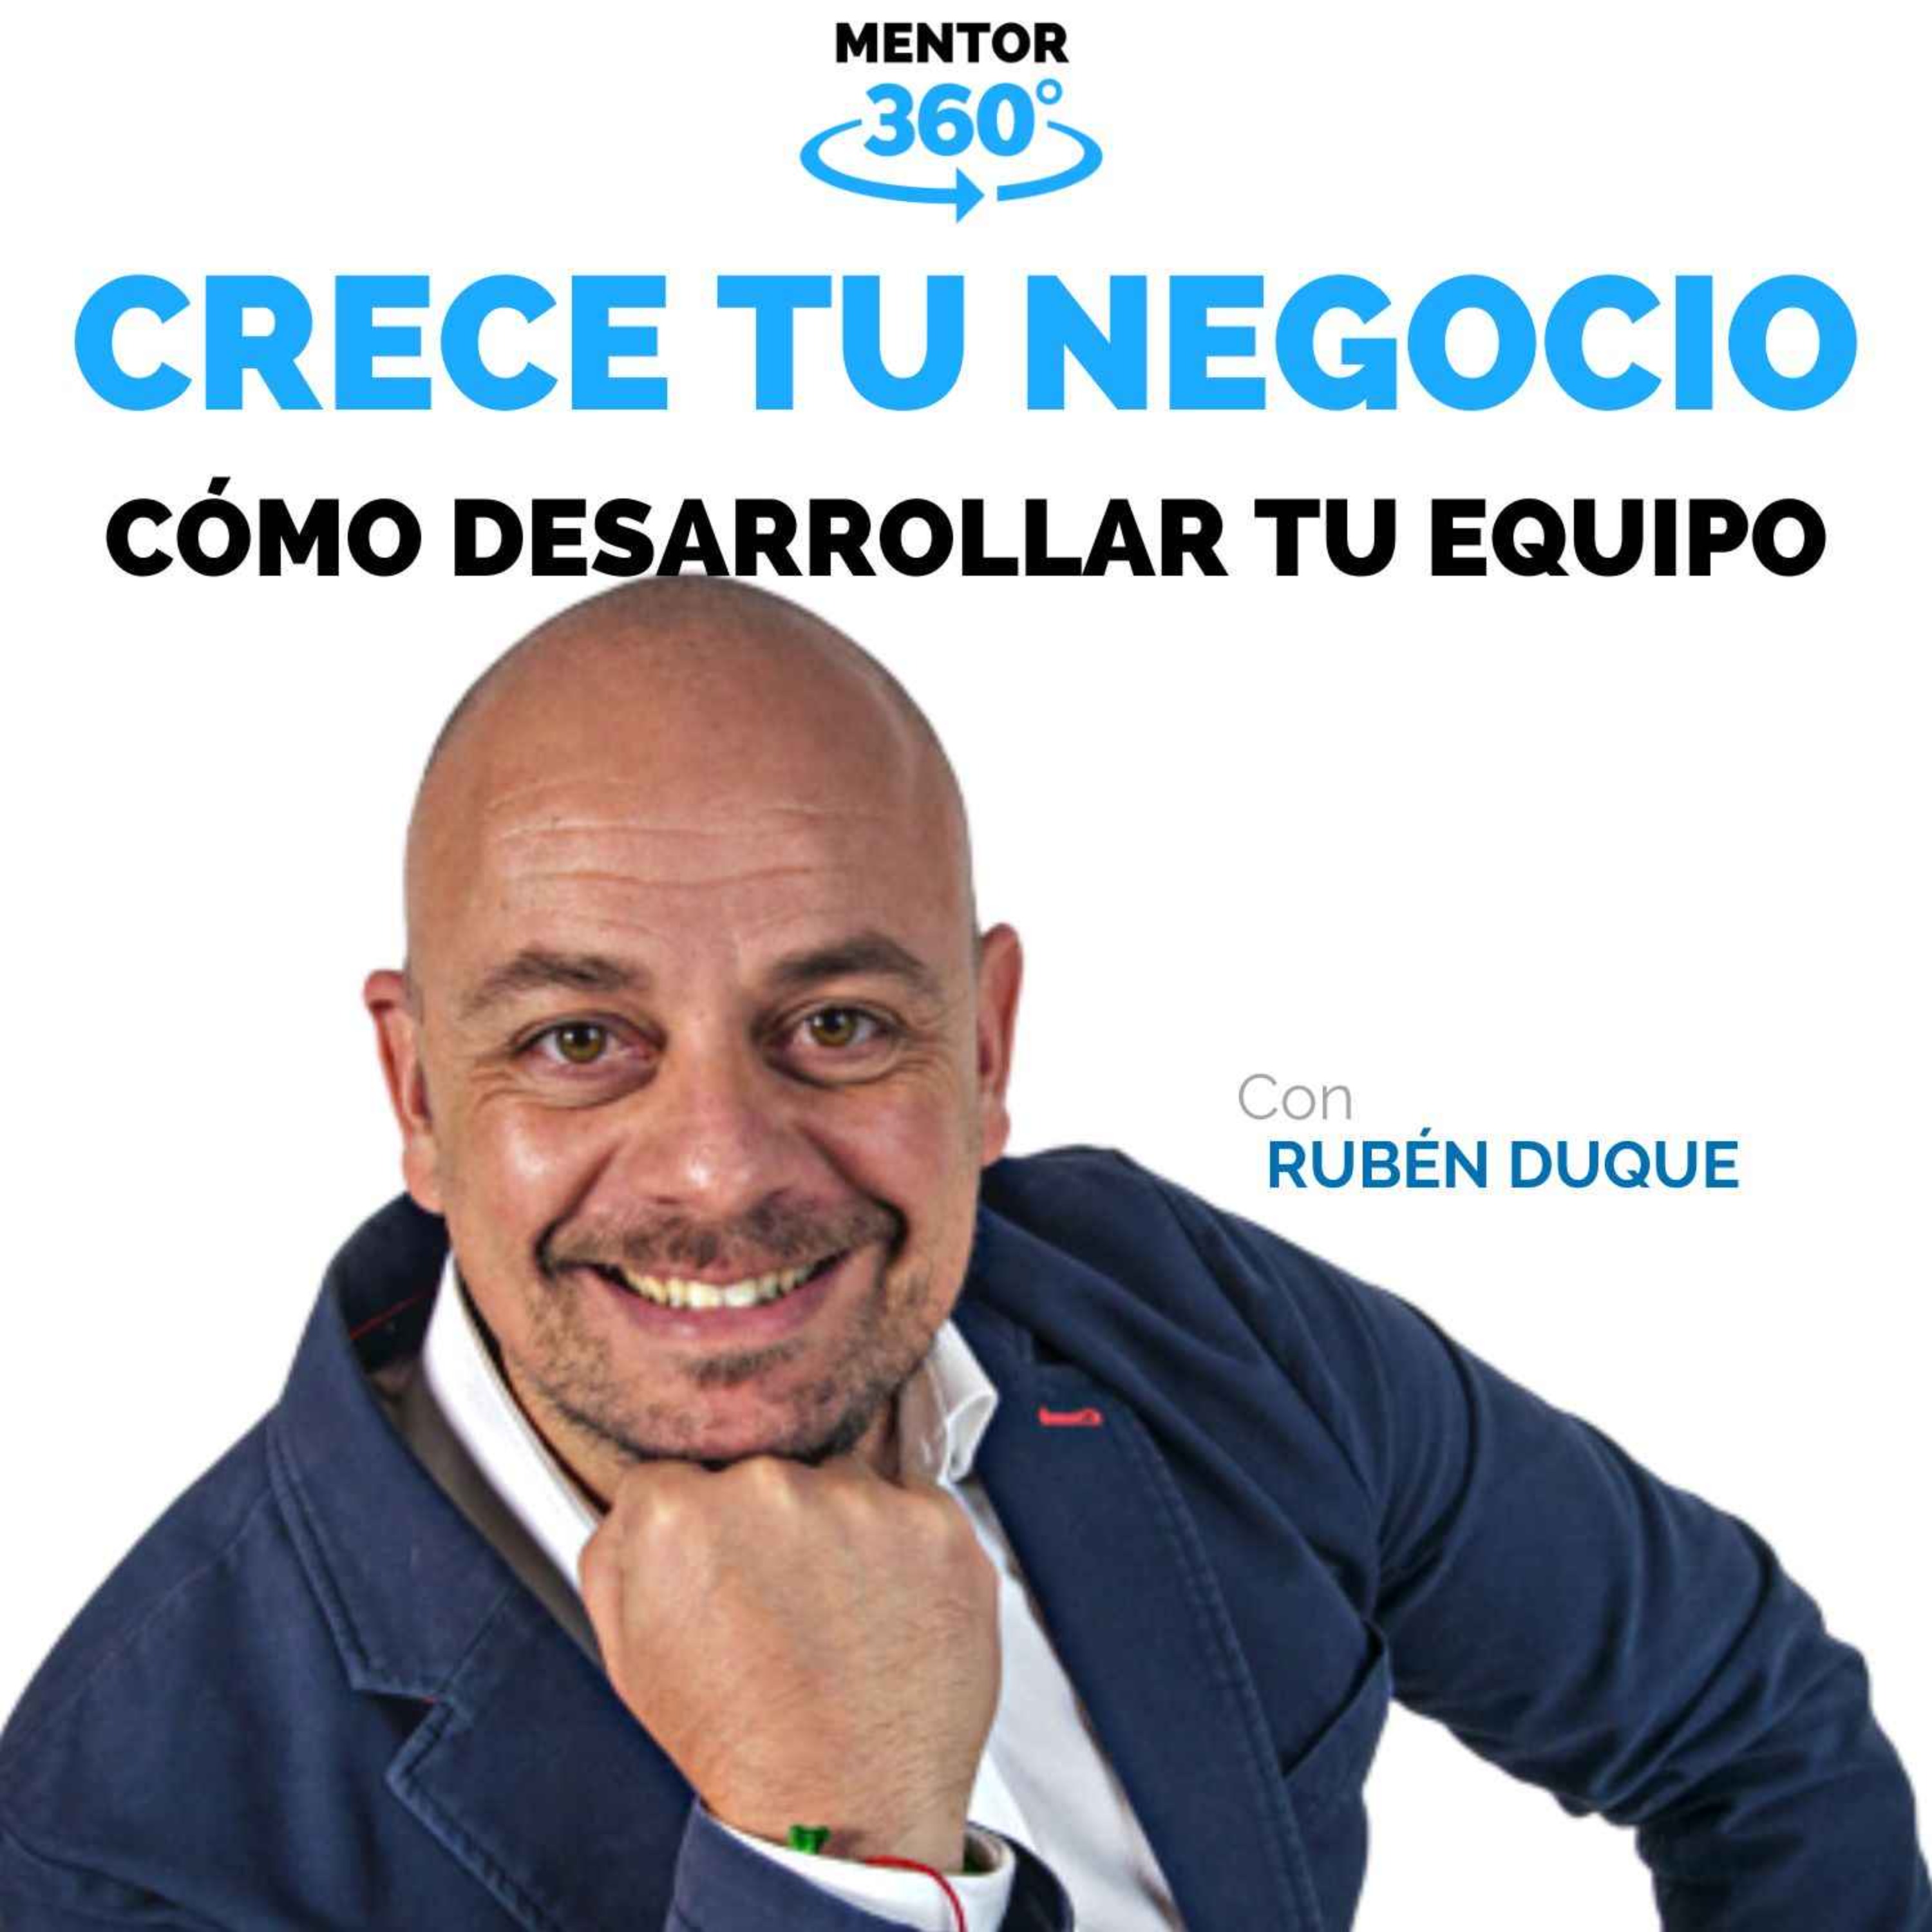 Cómo Construir y Desarrollar Nuestro Equipo - Rubén Duque - Crece Tu Negocio - MENTOR360